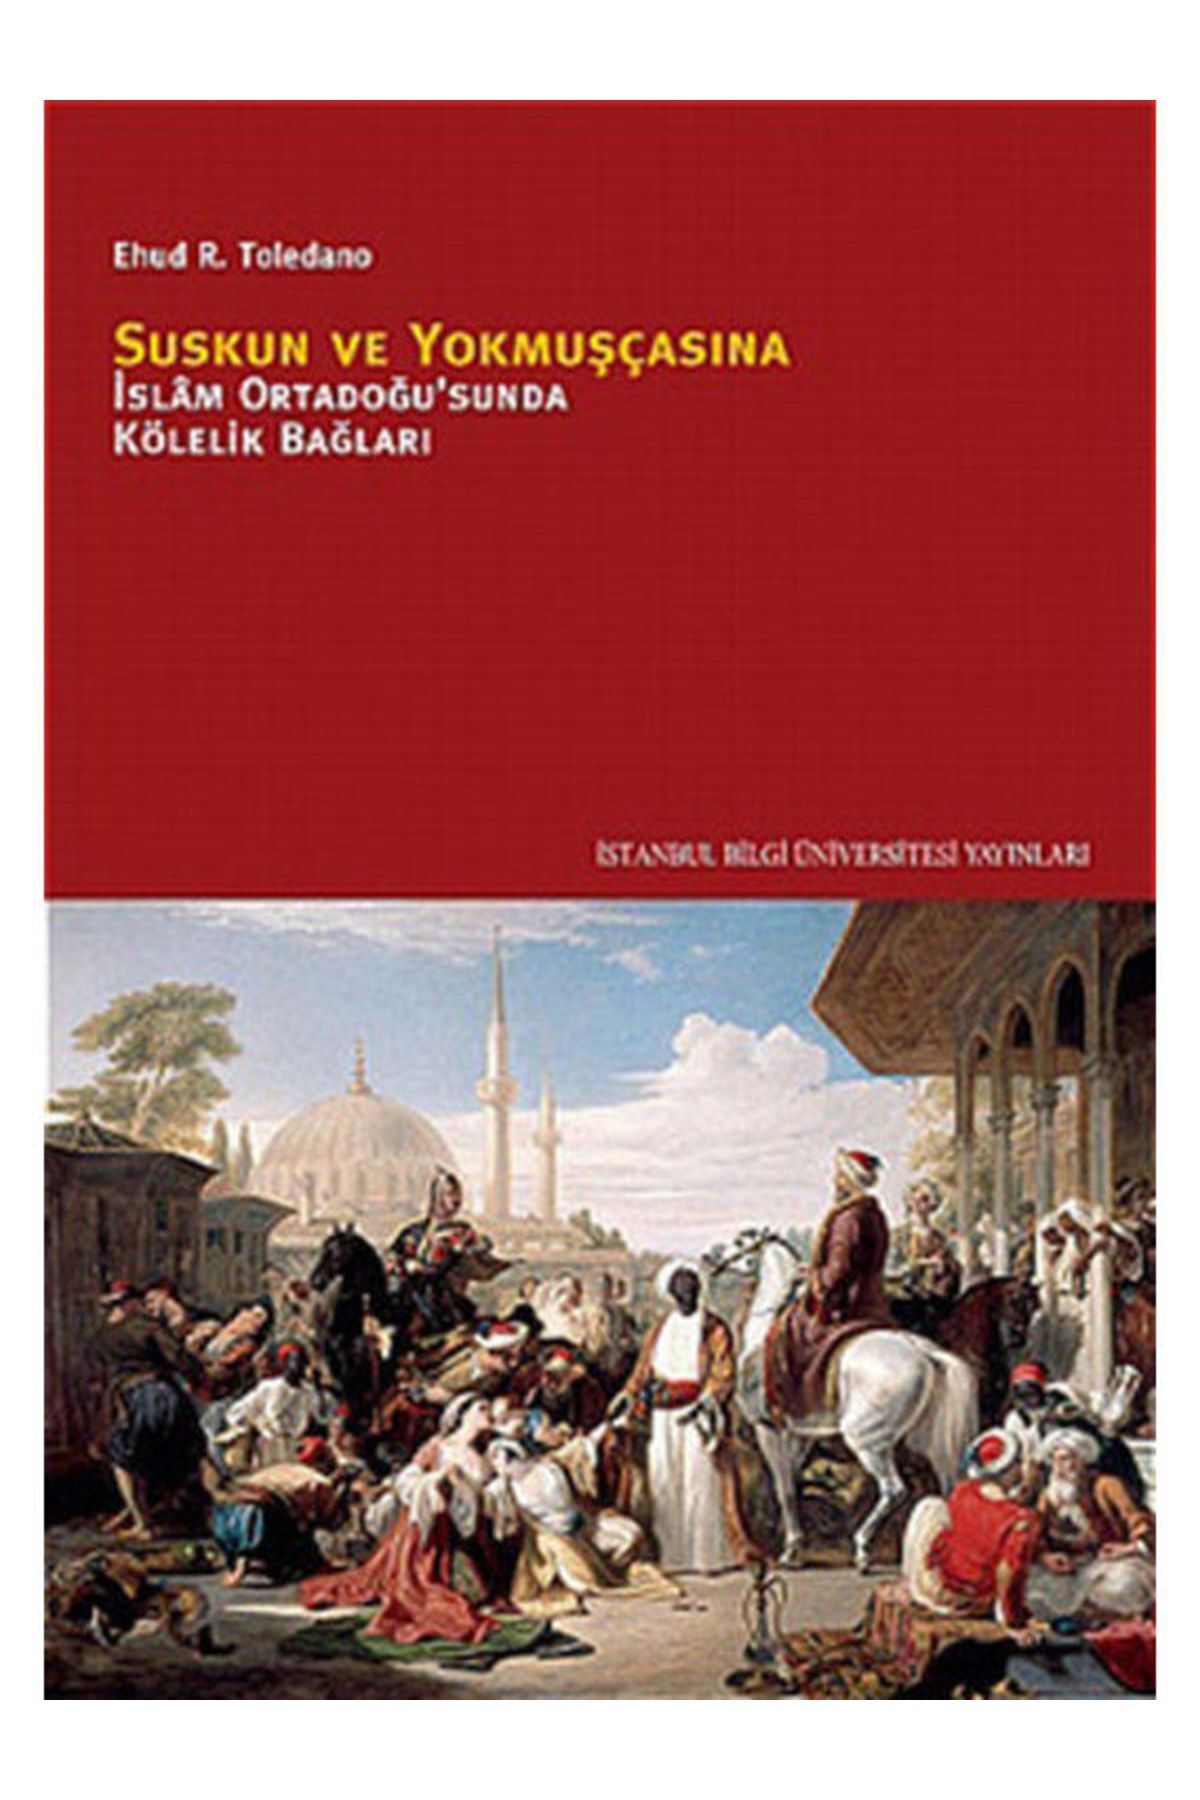 İstanbul Bilgi Üniversitesi Yayınları Suskun Ve Yokmuşcasına Islam Ortadoğusunda Kölelik Bağları Ehud R Toledano